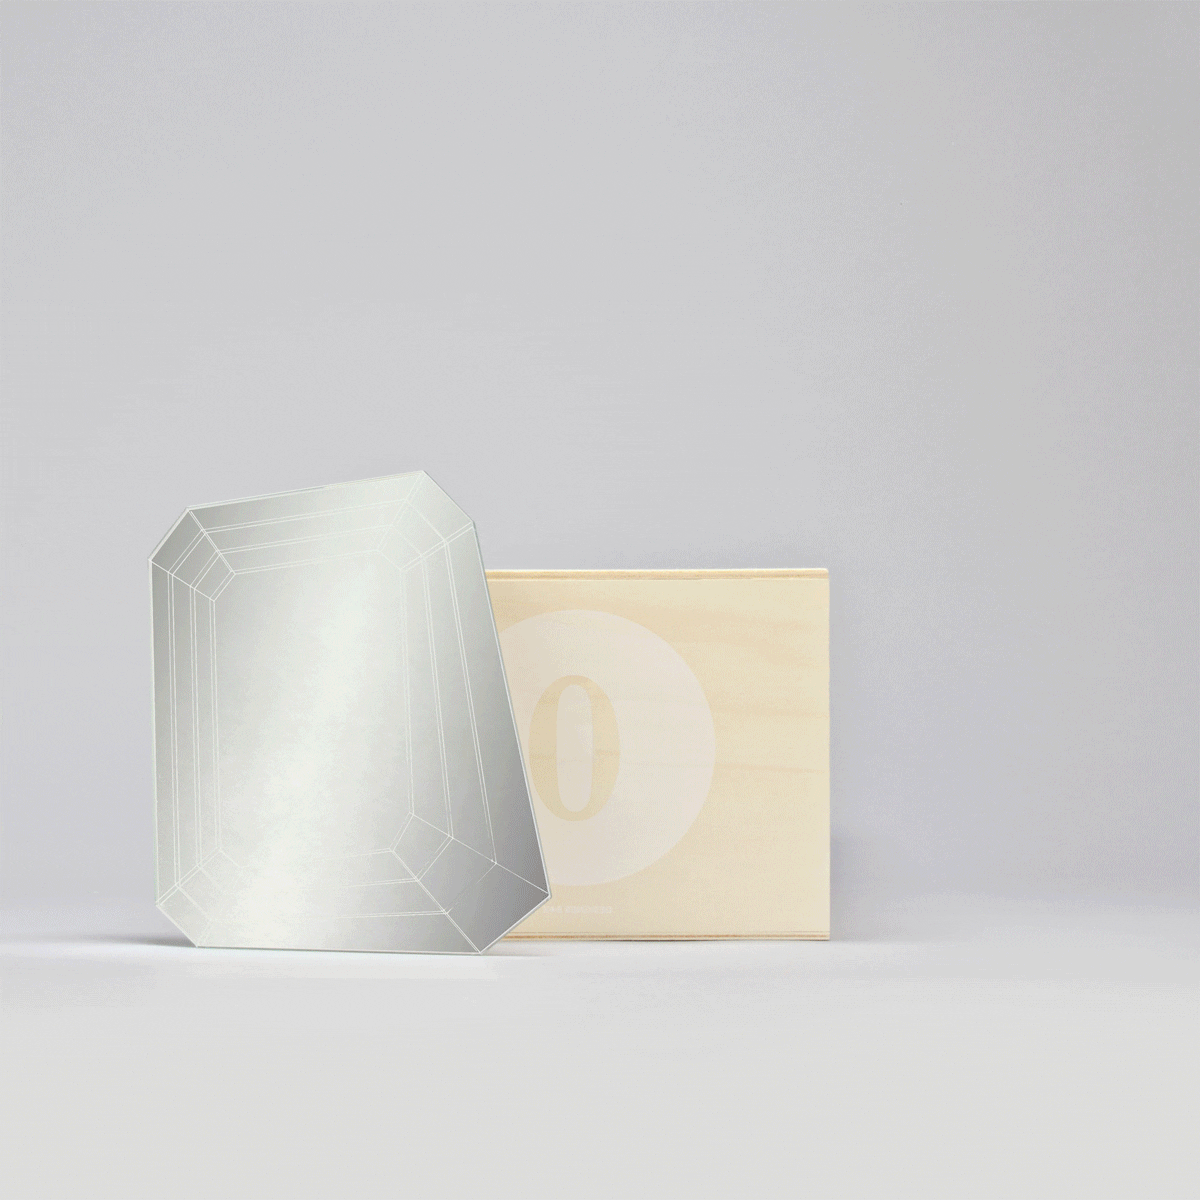 designer box boites et objet design par ichetkar